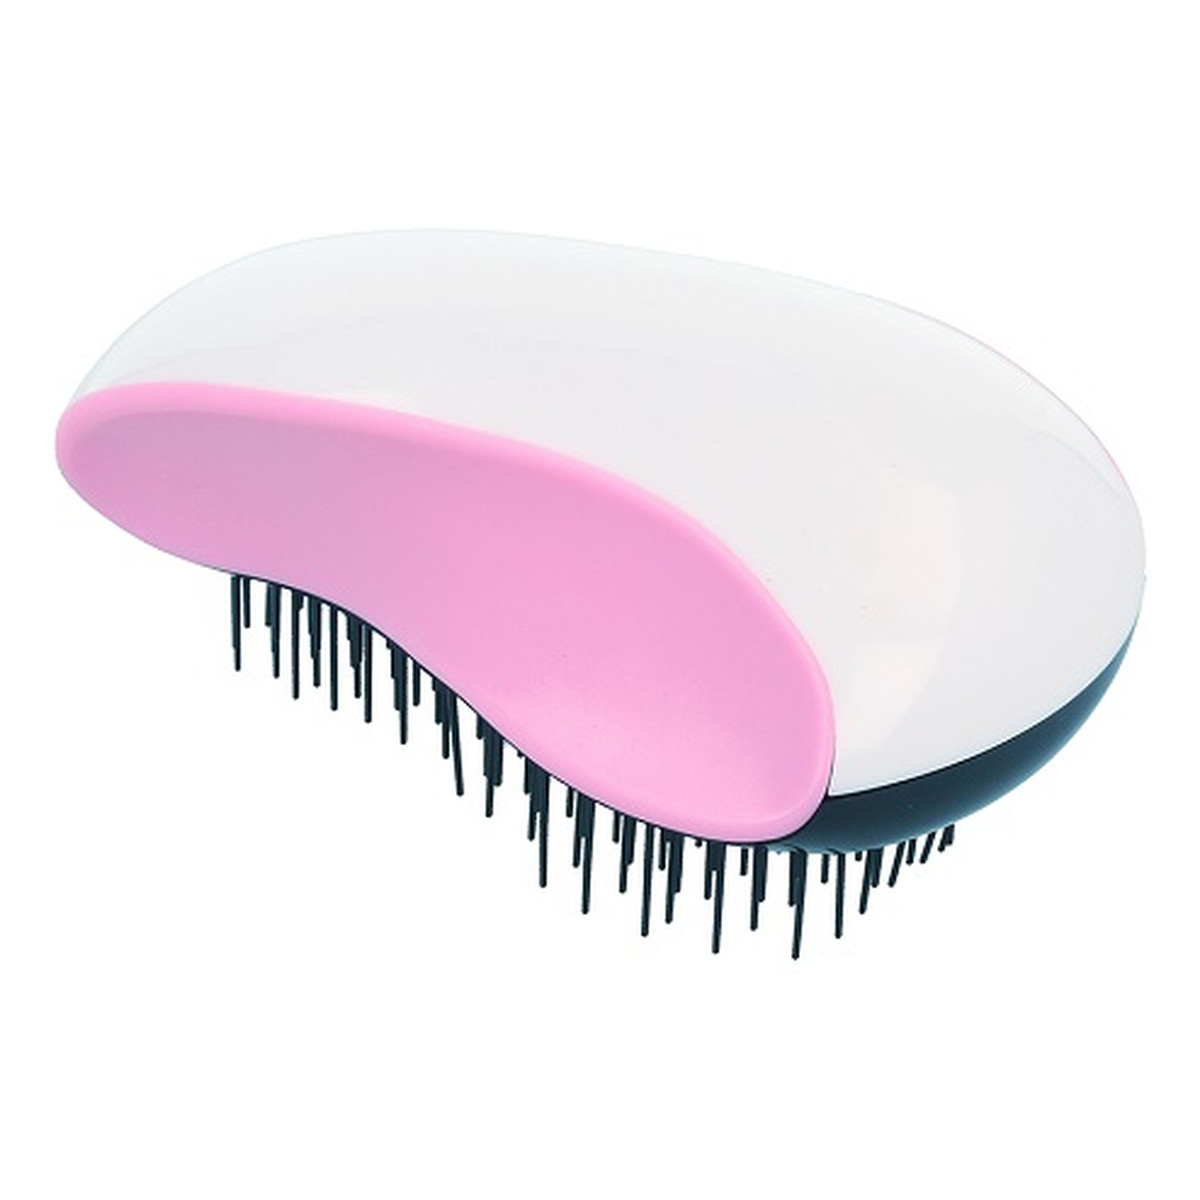 Twish Spiky Model 1 szczotka do włosów White & Persian Pink